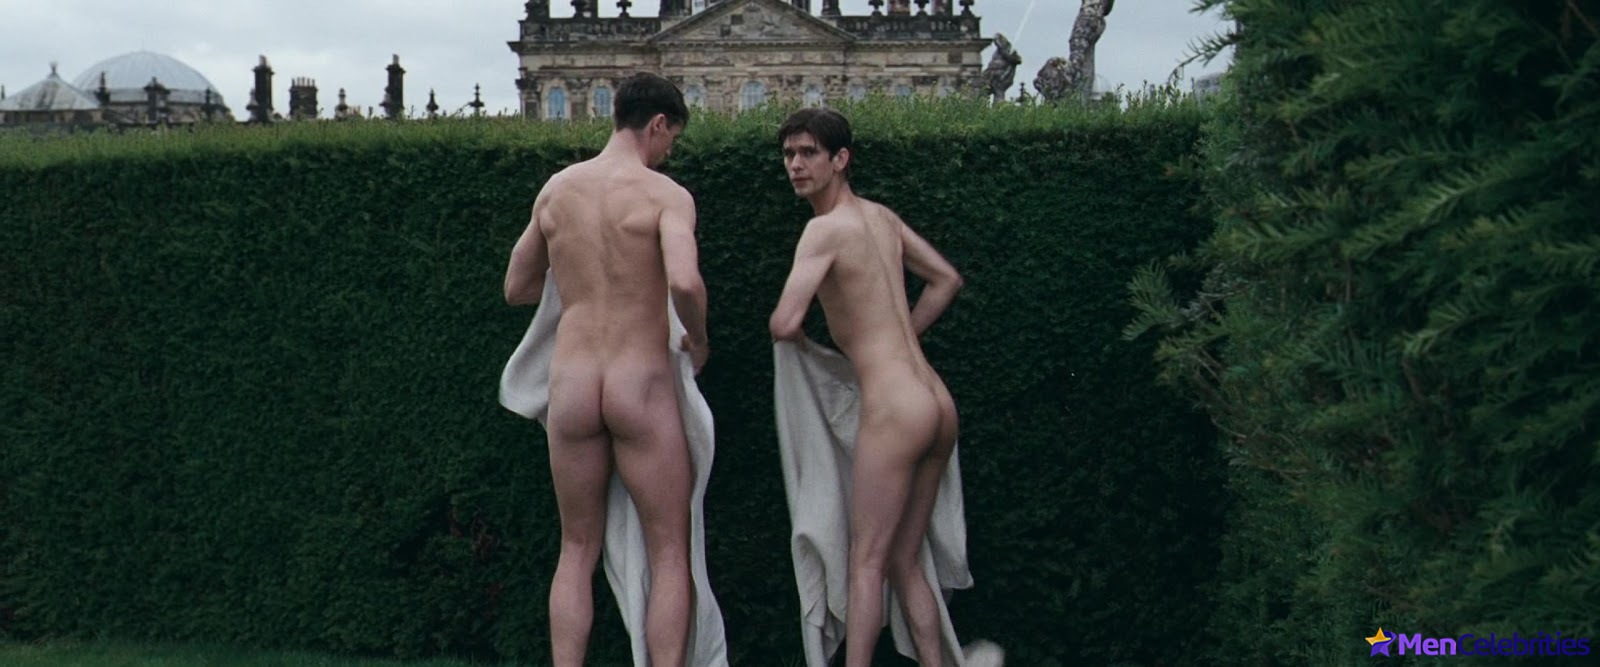 Matthew goode naked body - Real Naked Girls.